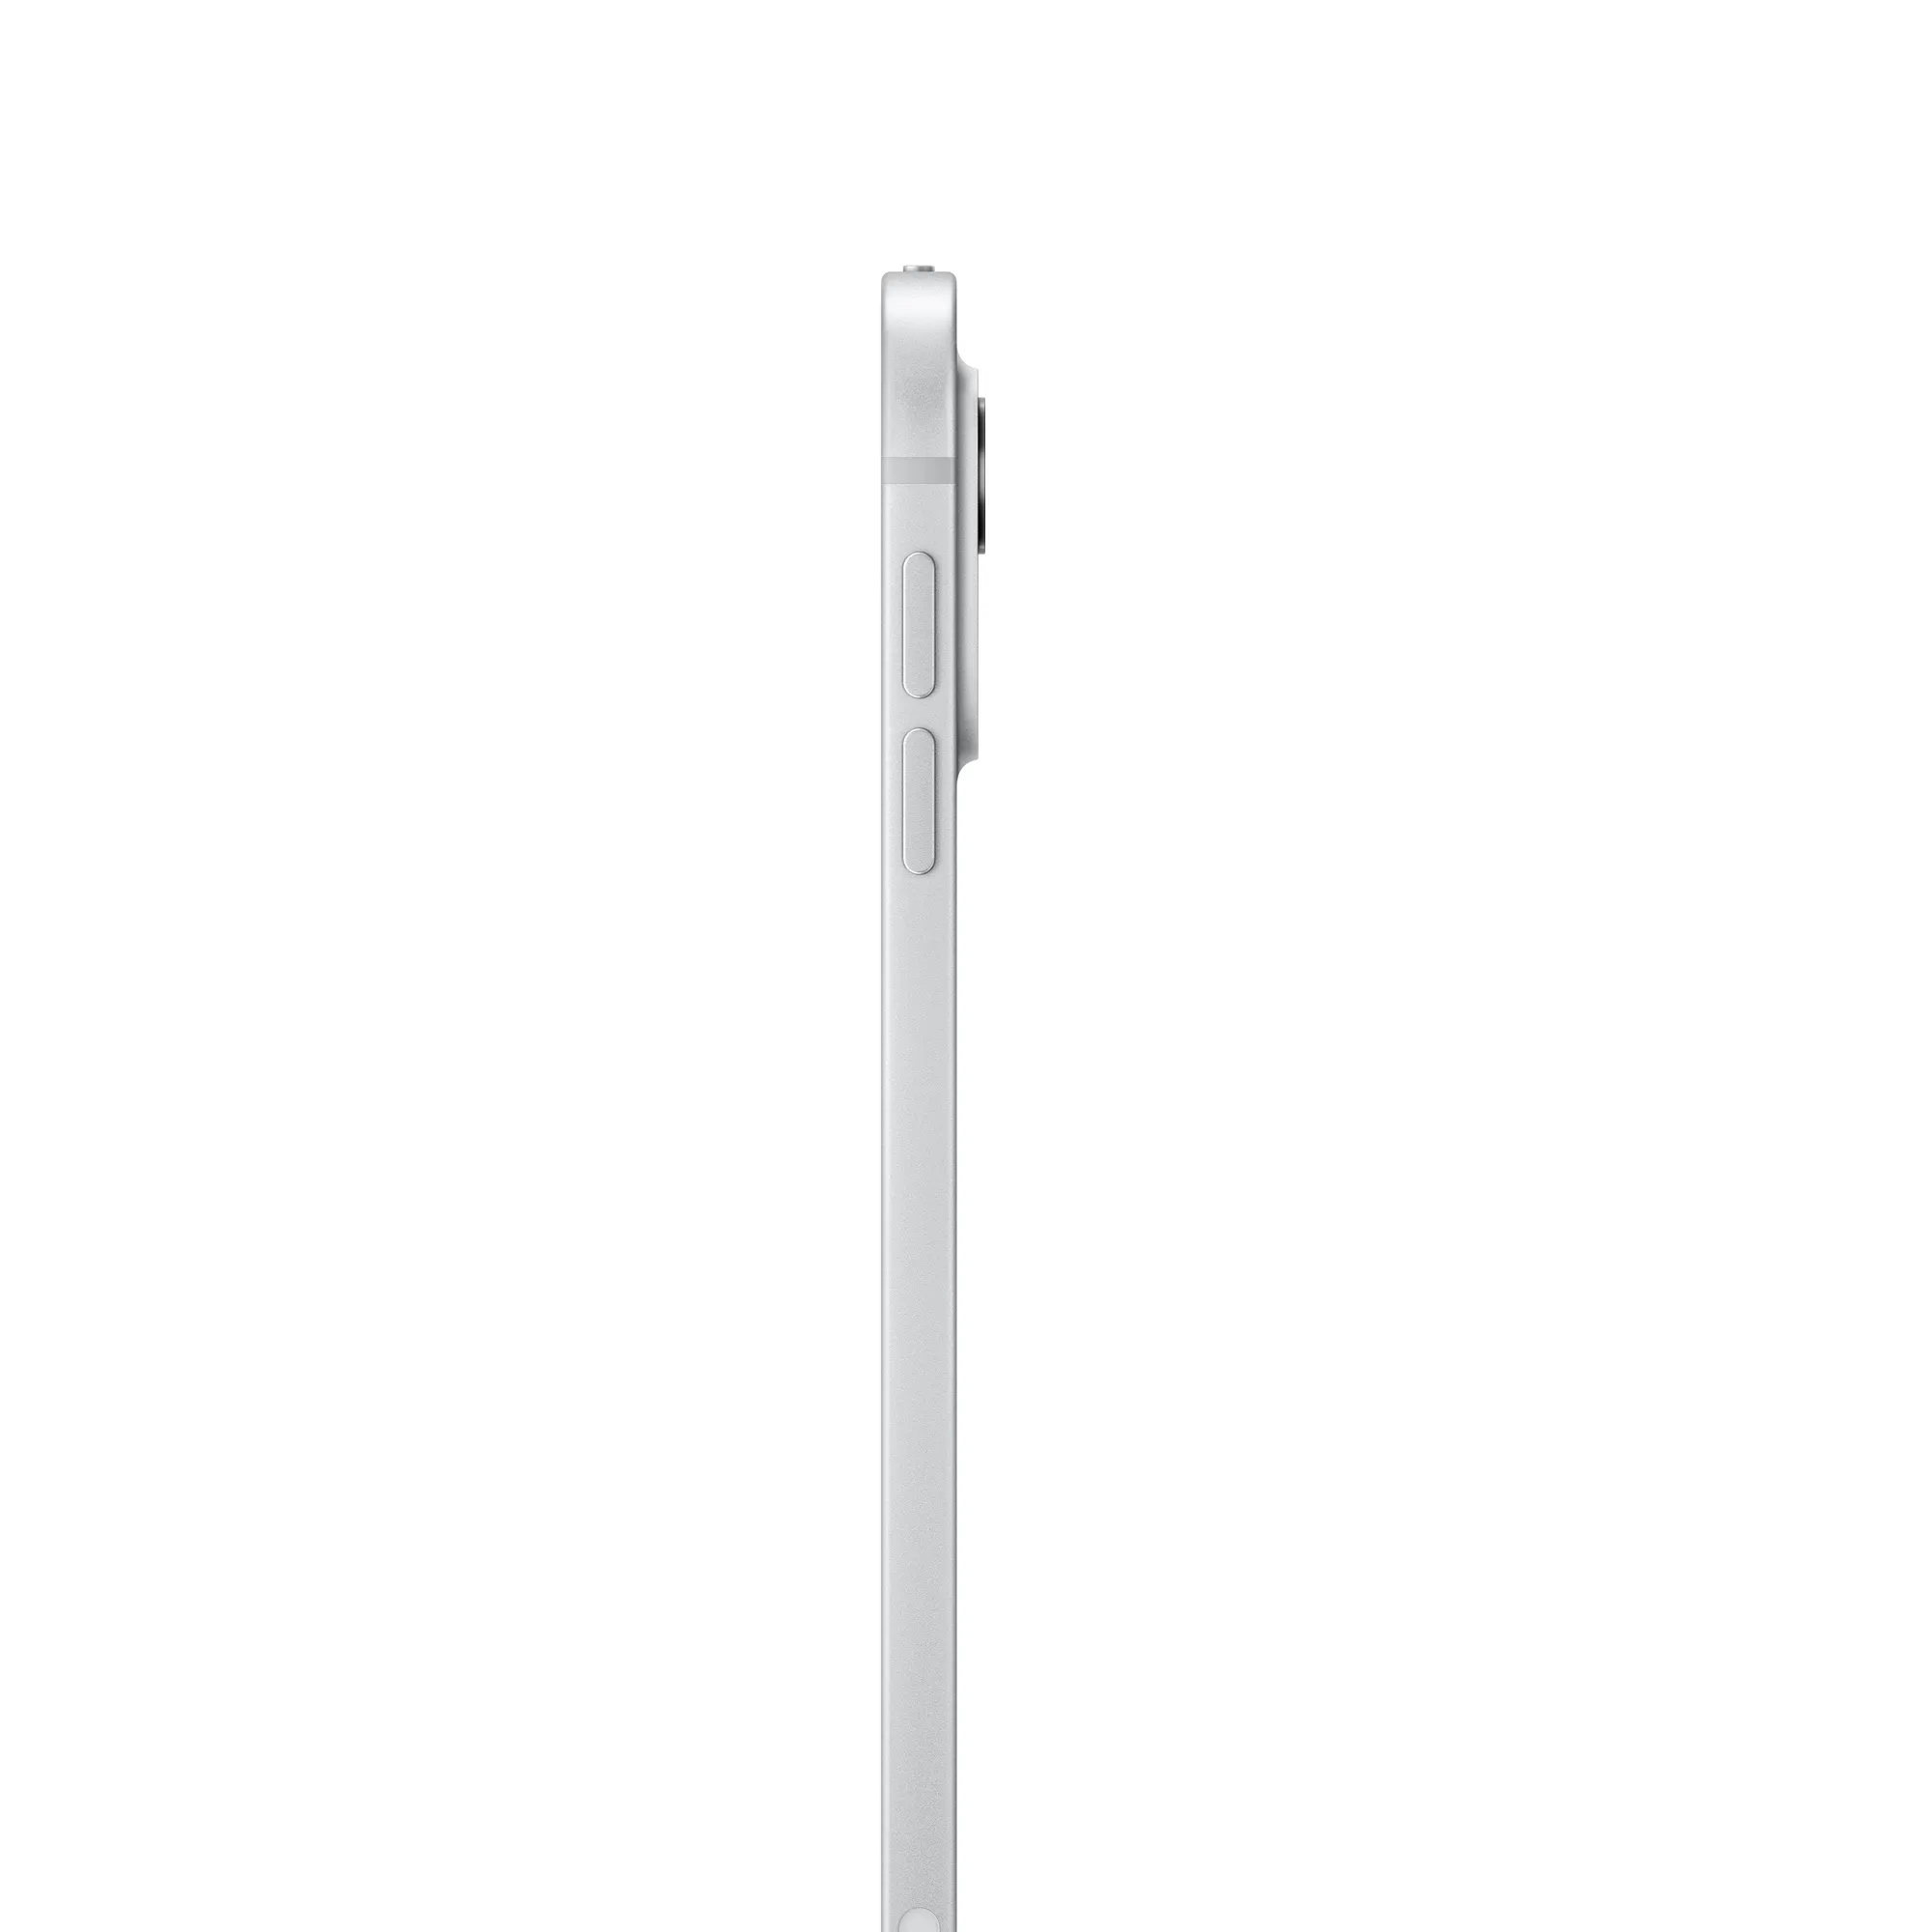 11 hüvelykes iPad Pro, Wi-Fi + Cellular, 256 GB, normál üveg – ezüst